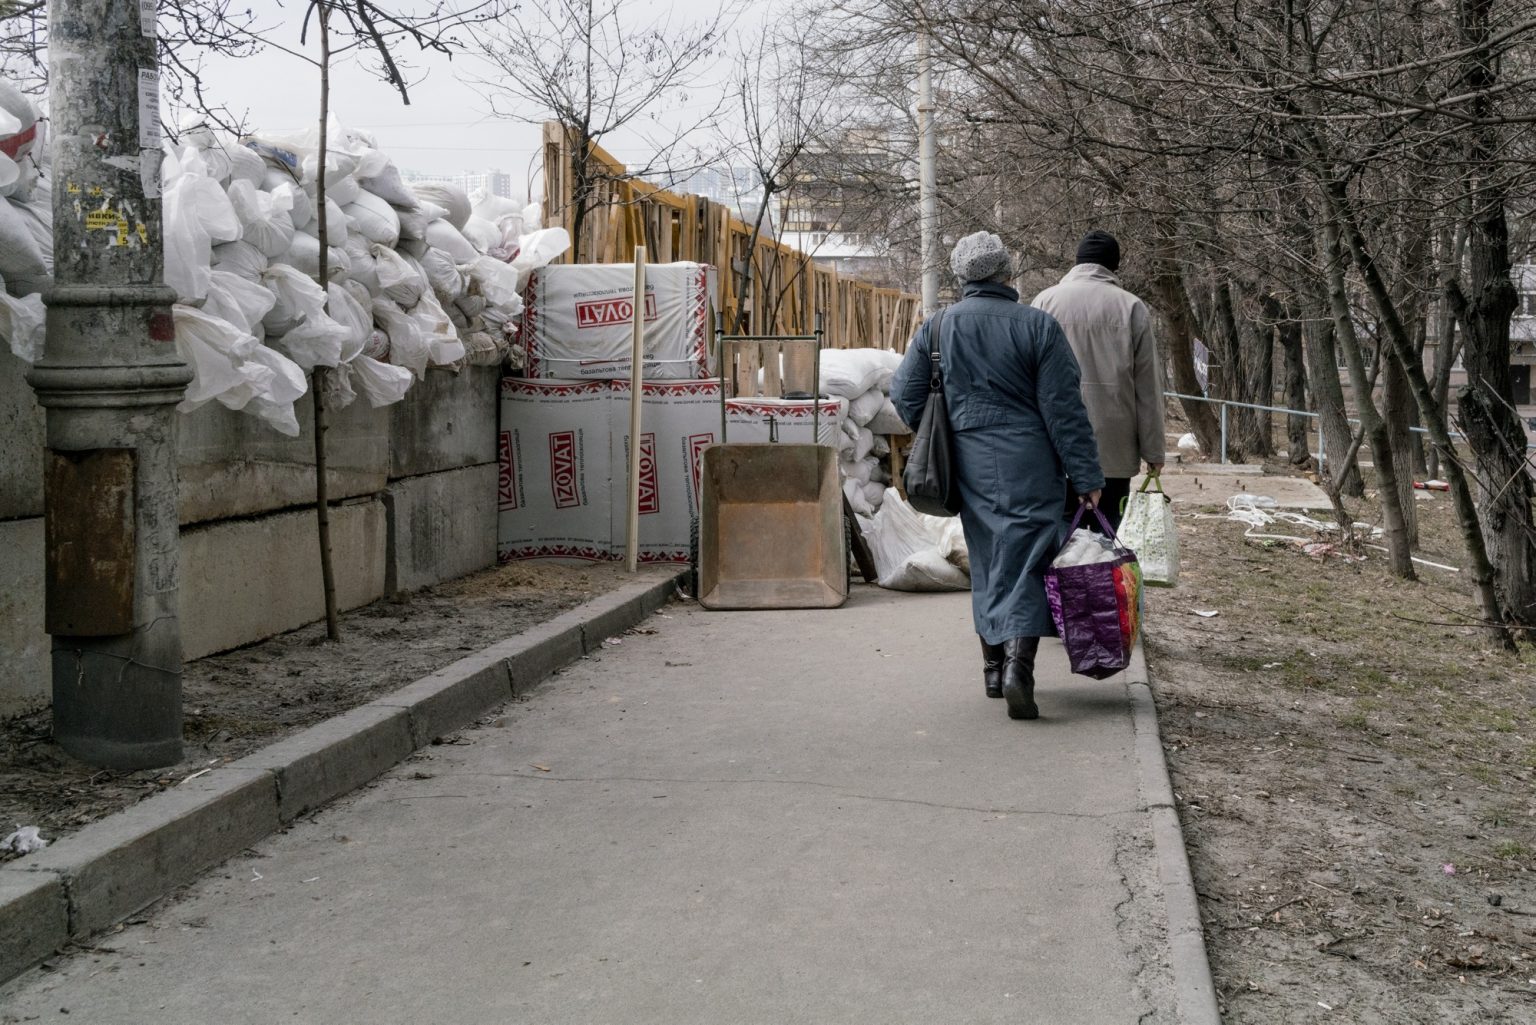 01559225 01557392 UKRAINE, Kyiv. March 07, 2022 - People walk next to a barricade in Kyiv.                                                               As Russia invades Ukraine, thousands of Ukrainians are fleeing the country to find shelter in bordering countries. 
---------
Con l'invasione russa ai danni dell'Ucraina, migliaia di ucraini sono in fuga dalla nazione d'origine per cercare rifugio nelle nazioni confinanti.*** SPECIAL   FEE   APPLIES ****** SPECIAL   FEE   APPLIES *** *** Local Caption *** 01559225